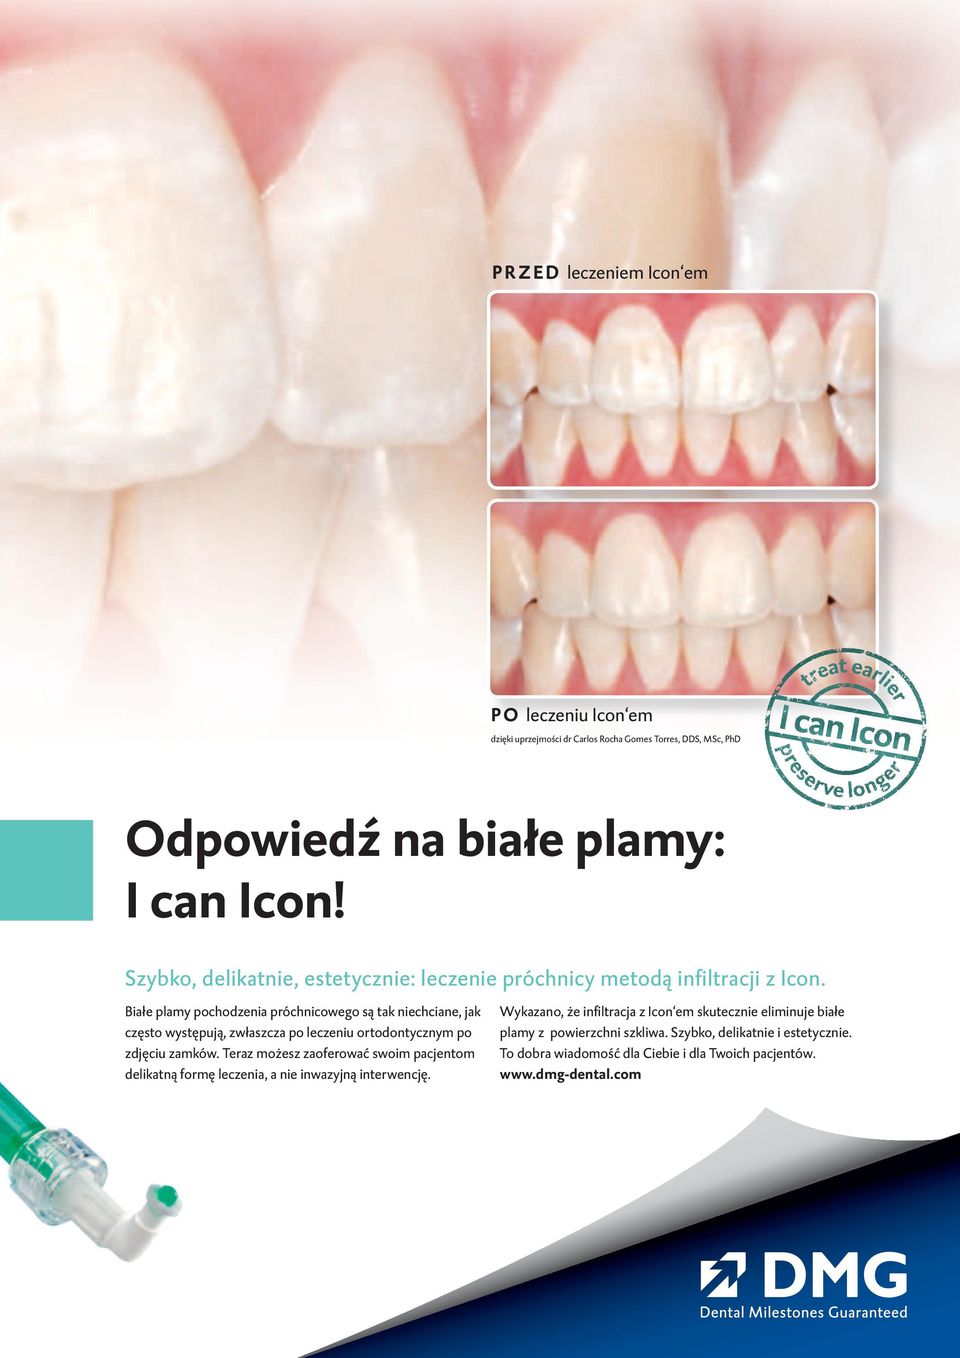 Białe plamy pochodzenia próchnicowego są tak niechciane, jak często występują, zwłaszcza po leczeniu ortodontycznym po zdjęciu zamków.